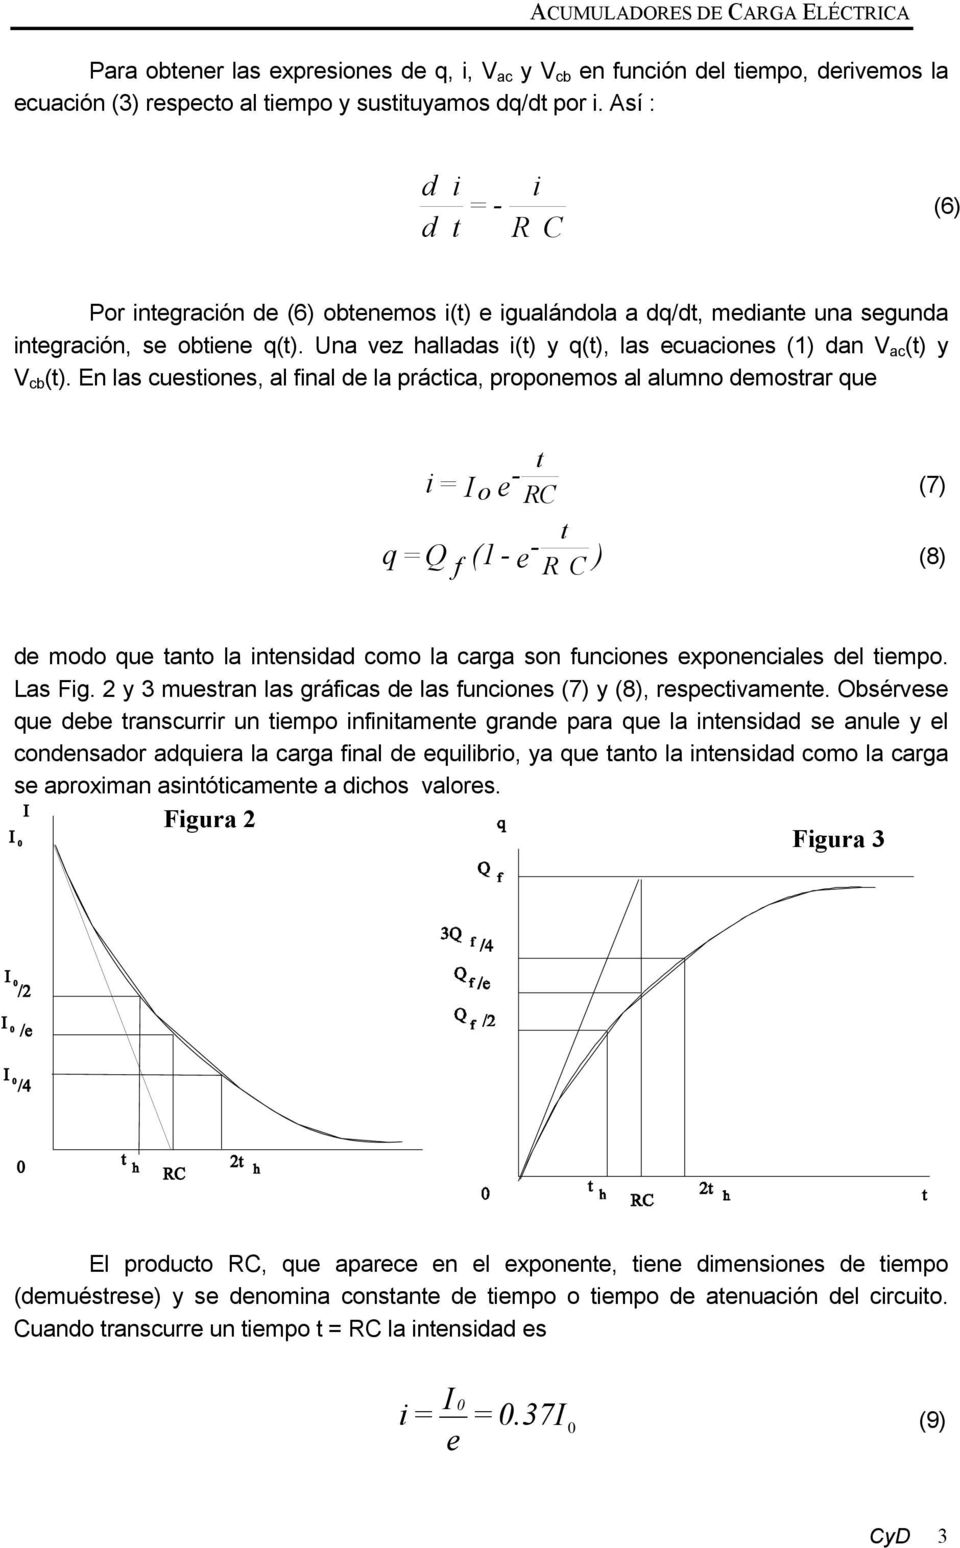 En las cuesiones, al final de la prácica, proponemos al alumno demosrar que q = Q i = I f - o e RC (7) - e R C ) (8) (1 - de modo que ano la inensidad como la carga son funciones exponenciales del